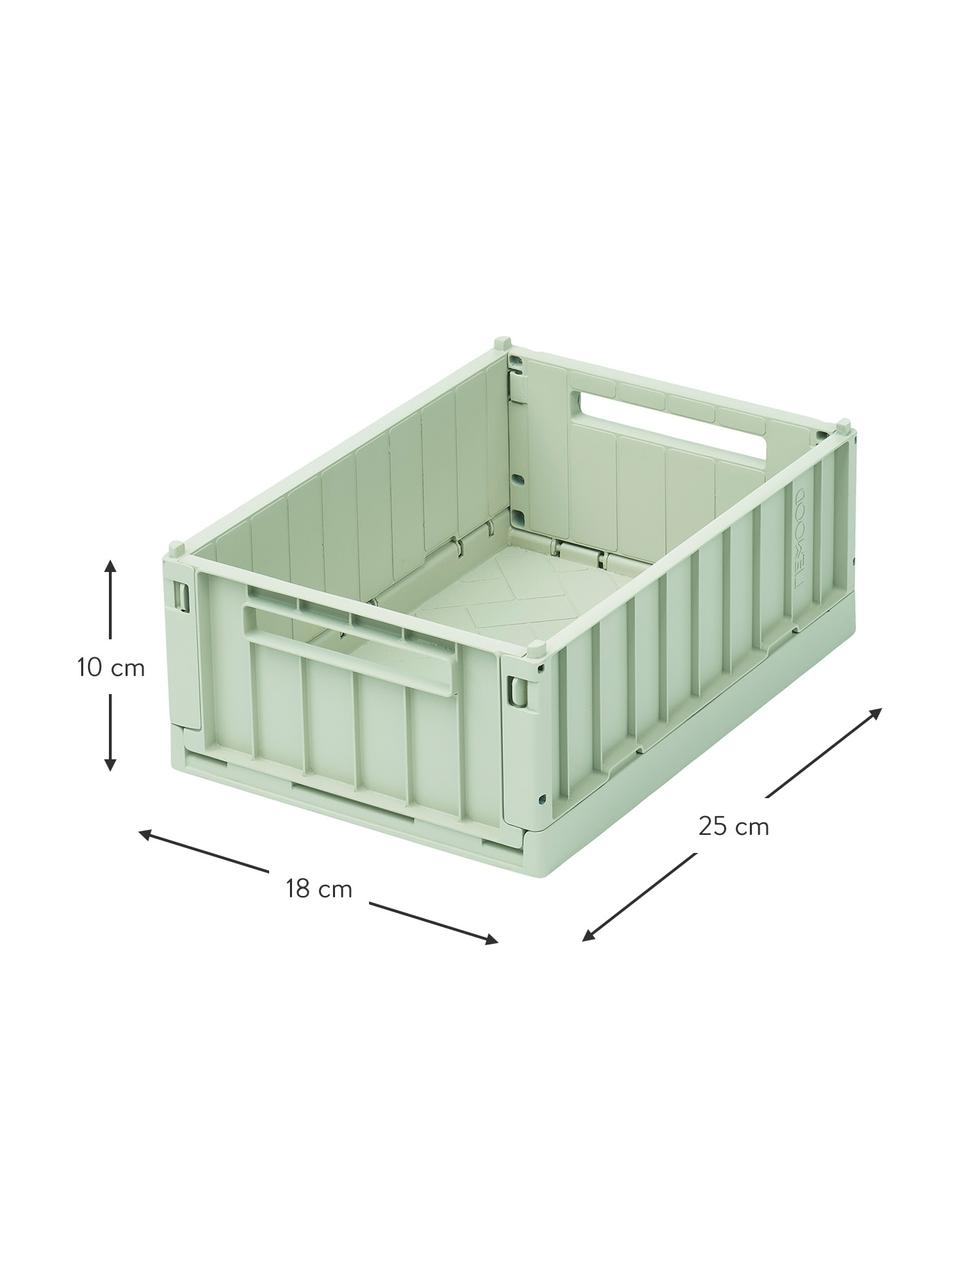 Skládací box z recyklovaného plastu Weston, malý, 2 ks, Recyklovaná umělá hmota, Přední a zadní strana: pastelově zelená, Š 25 cm, V 10 cm